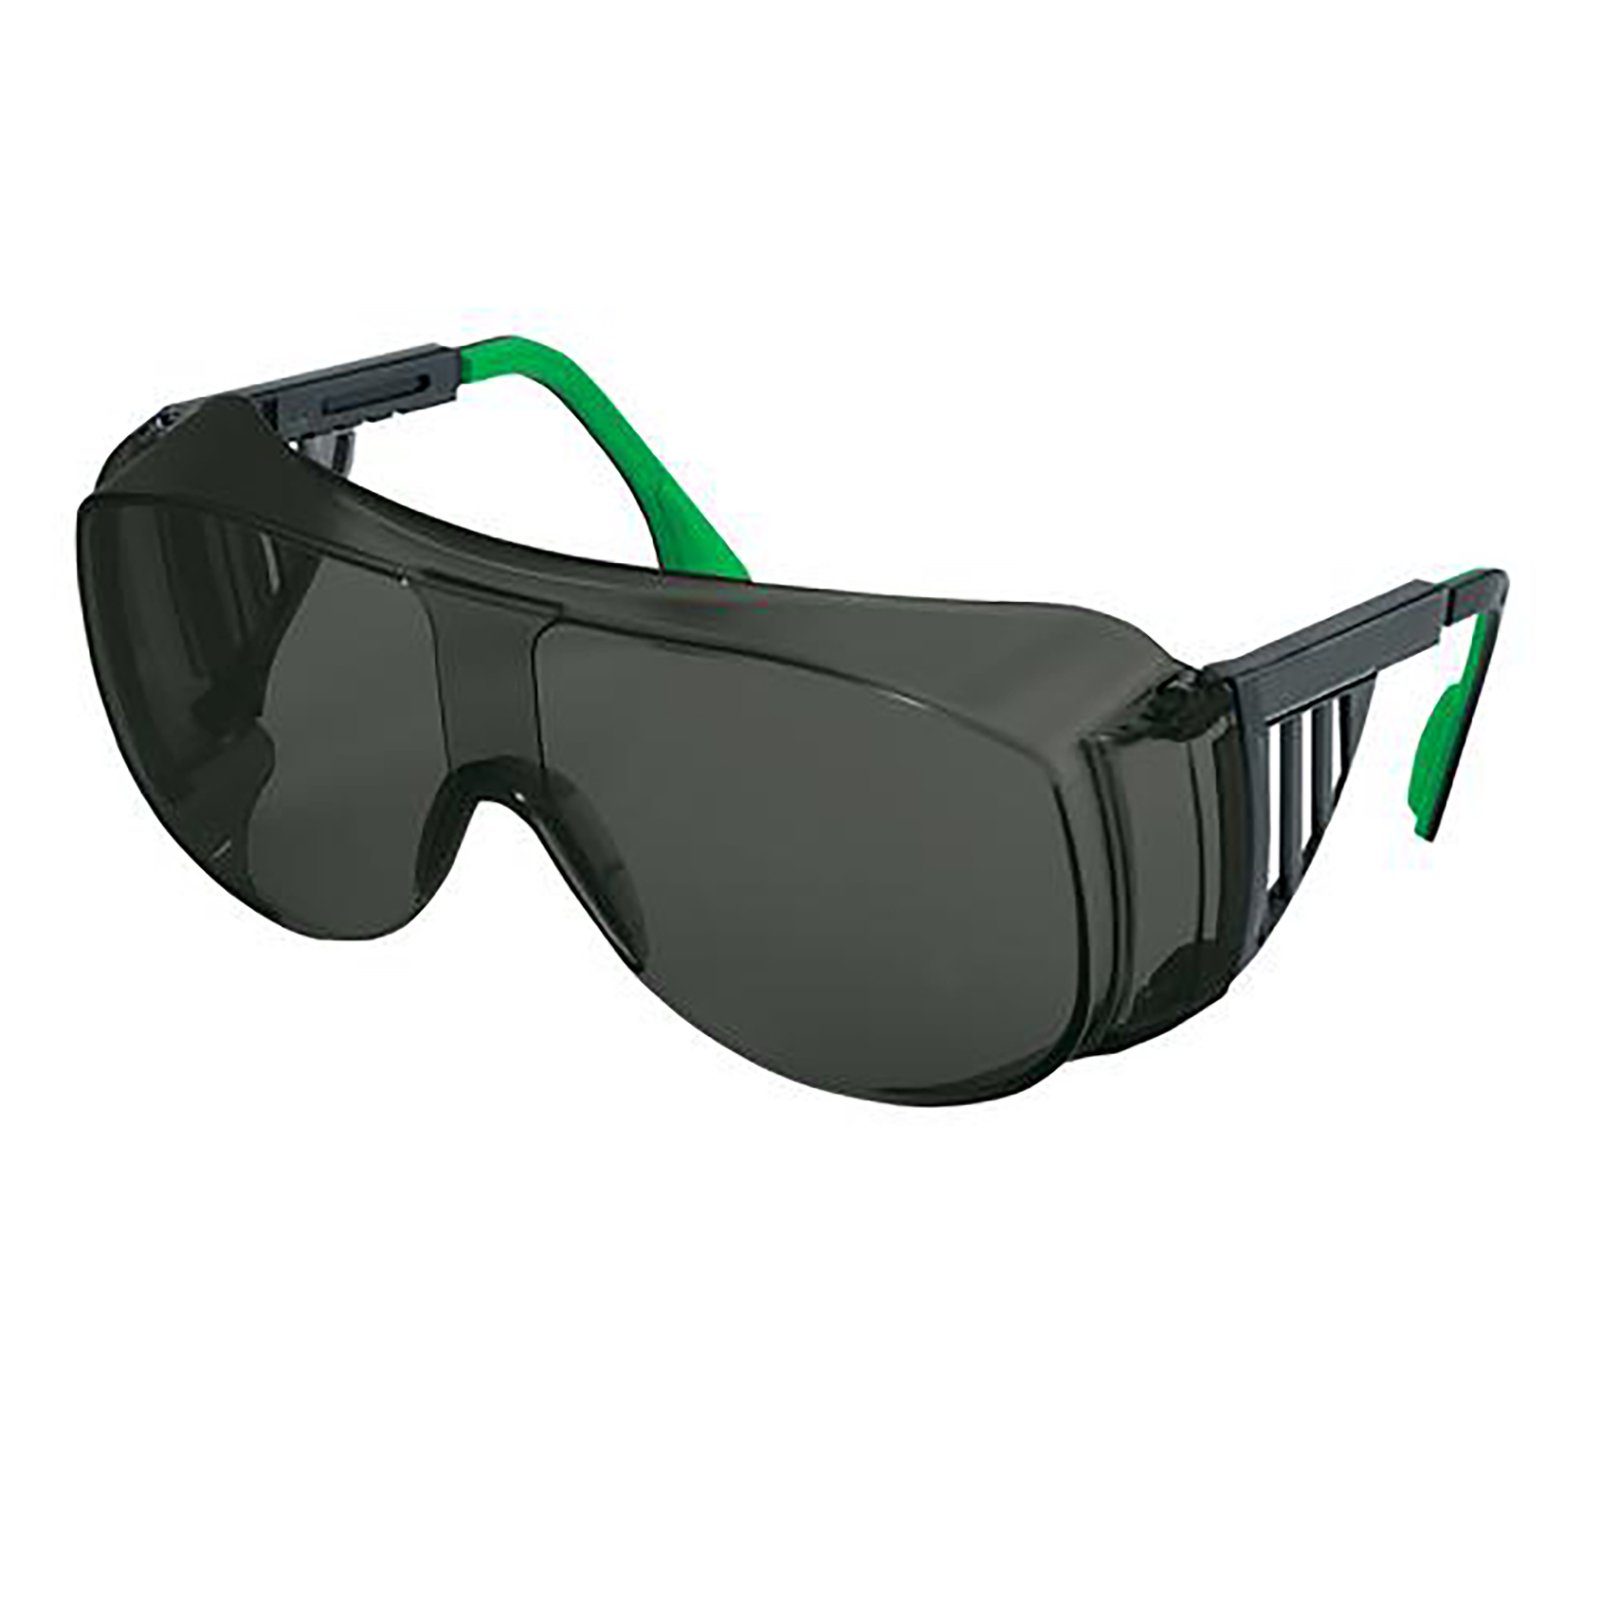 9161 Schweißerschutz infradur Uvex 4 Überbrille Arbeitsschutzbrille grau